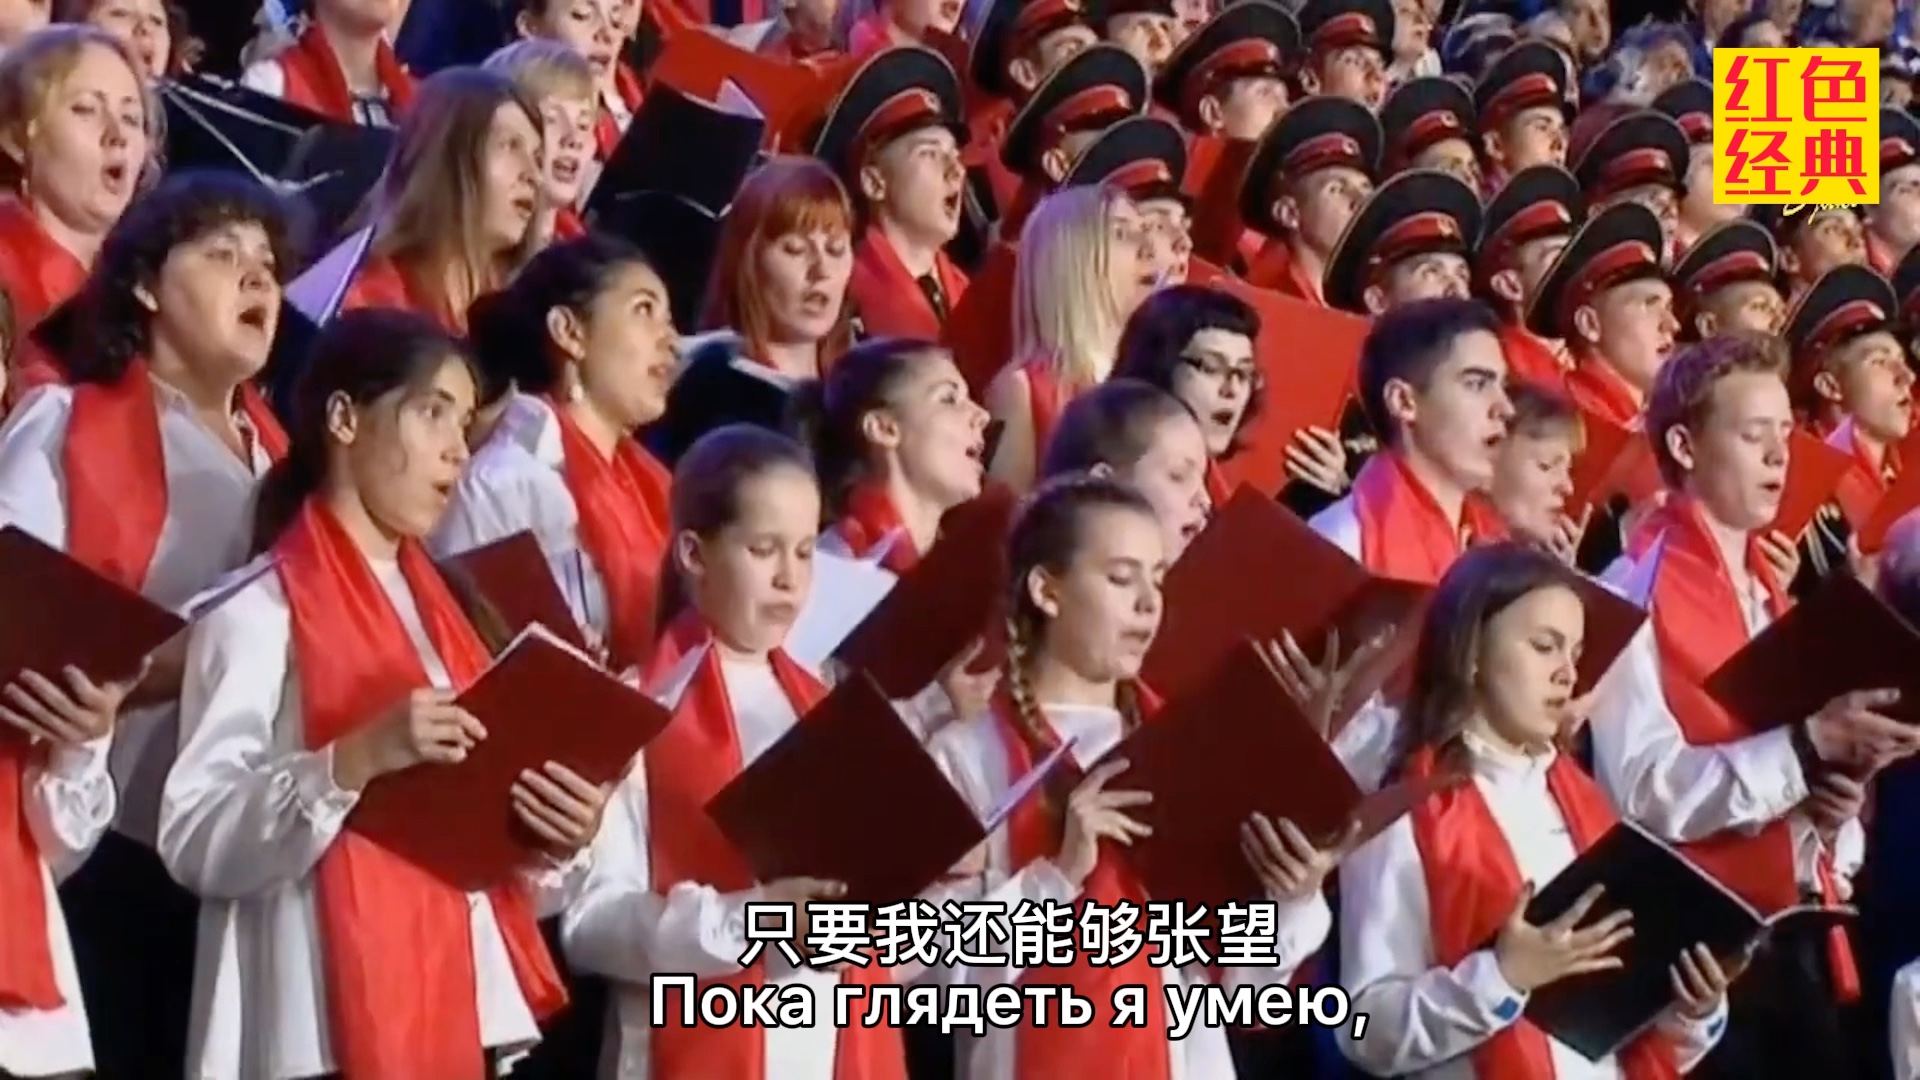 俄罗斯千人合唱《歌唱动荡青春》